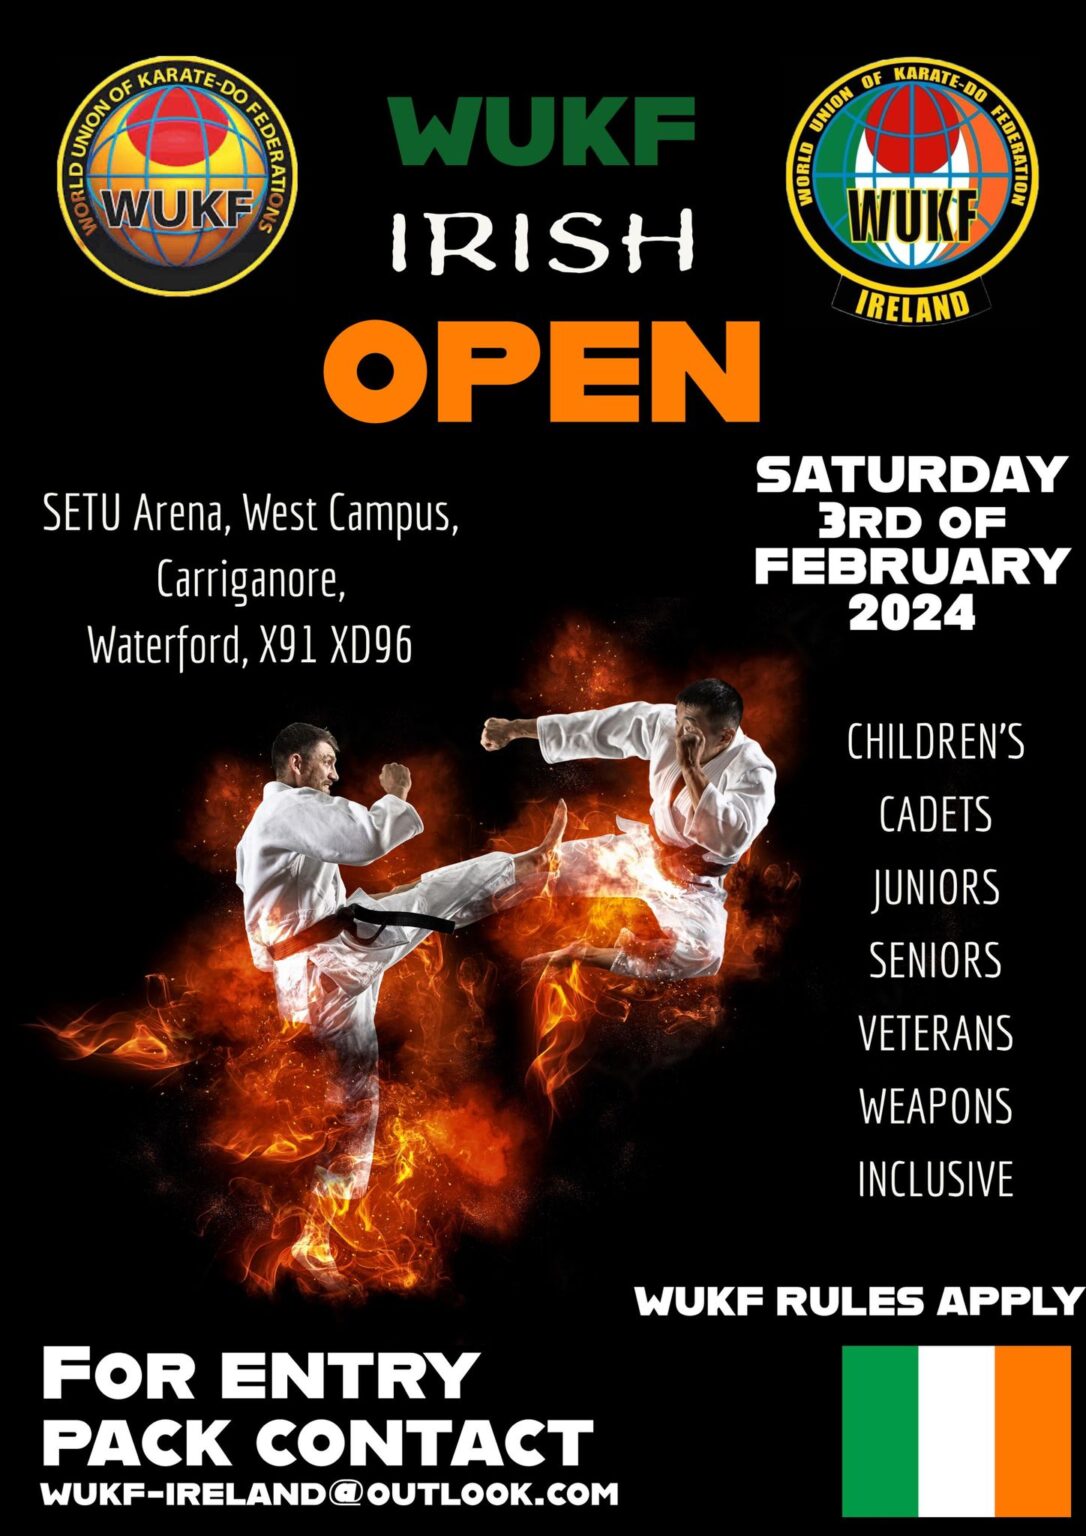 WUKF Scottish Open Karate Championships World Union of KarateDo